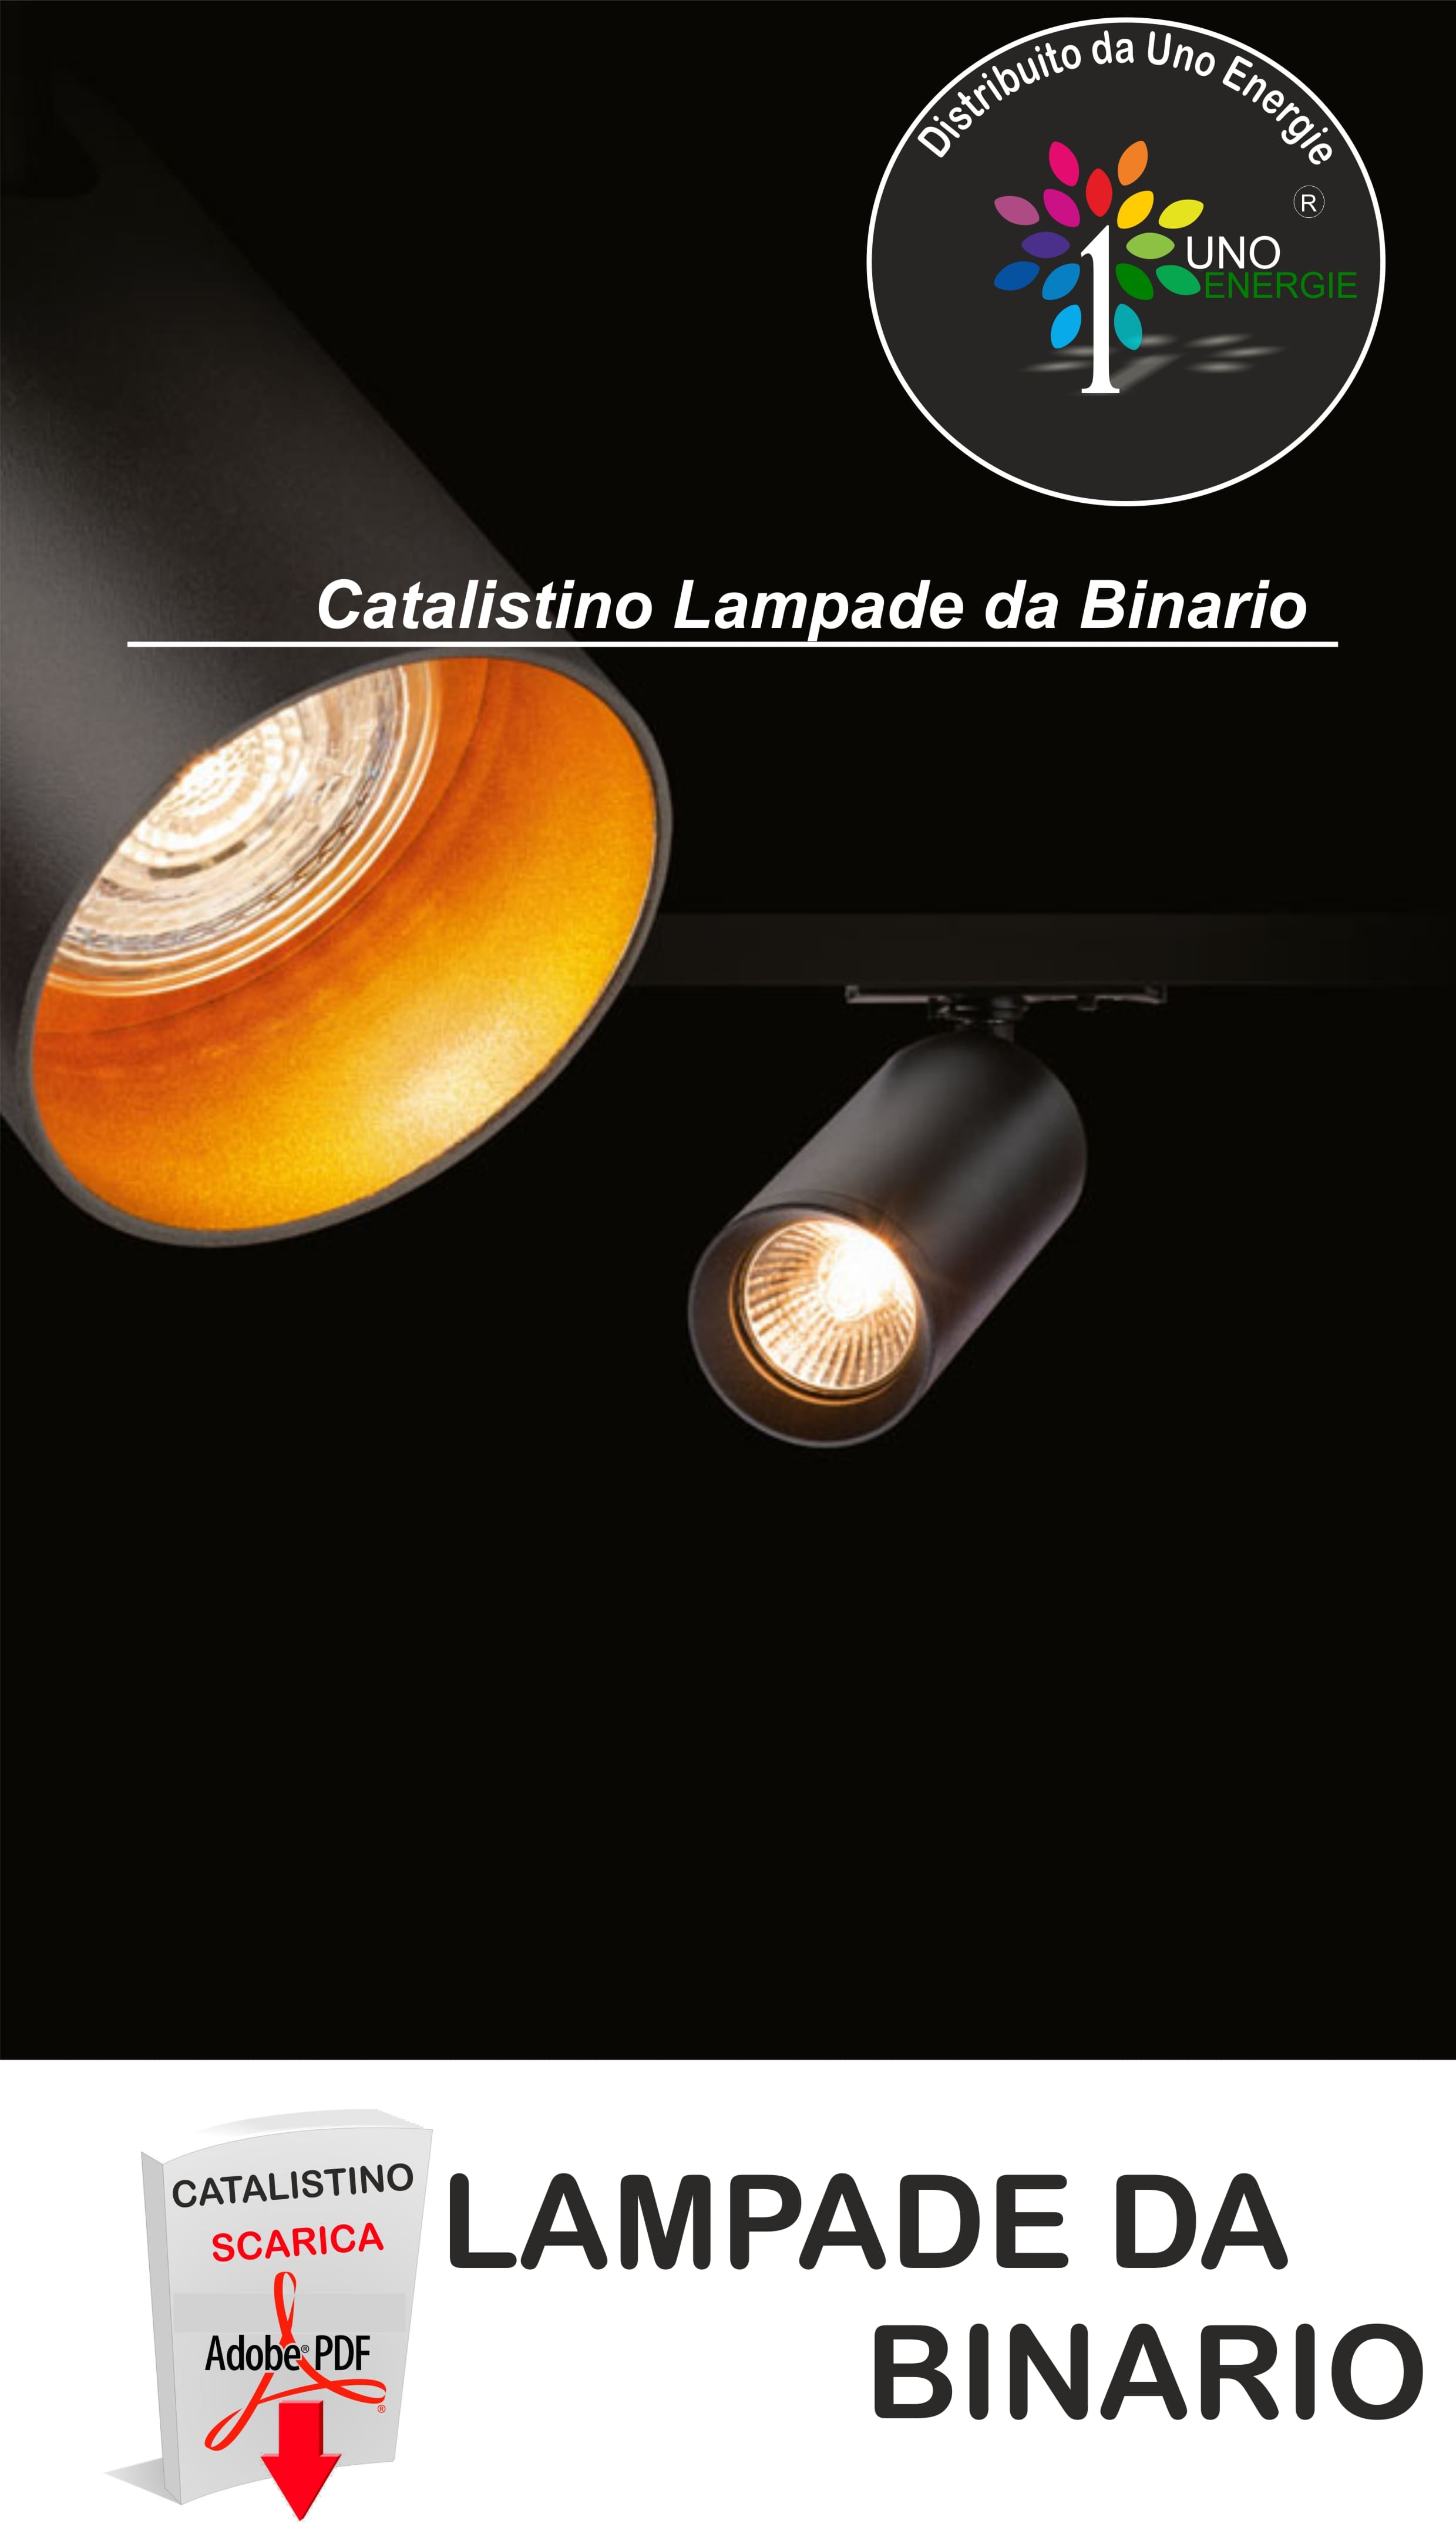 LAMPADE DA BINARIO